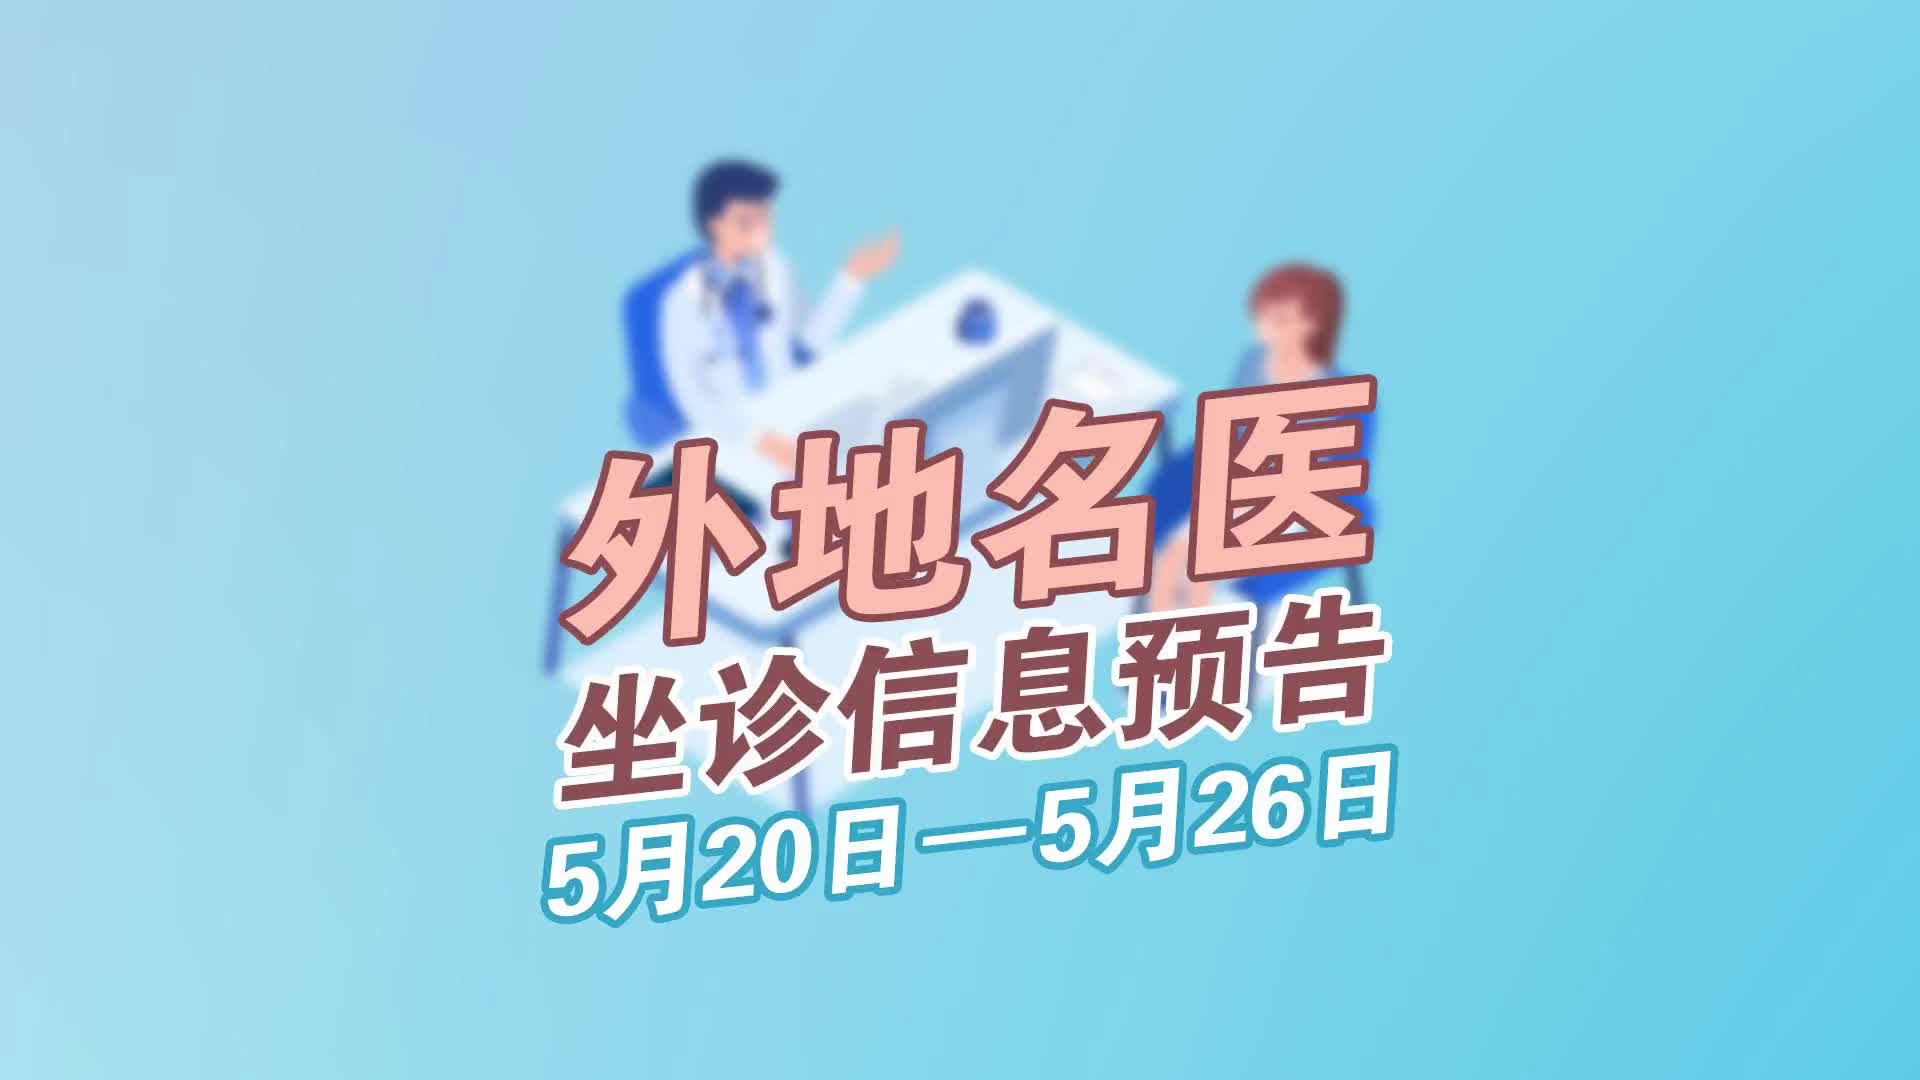 更济宁 | 外地名医坐诊信息预告 5月20日-5月26日